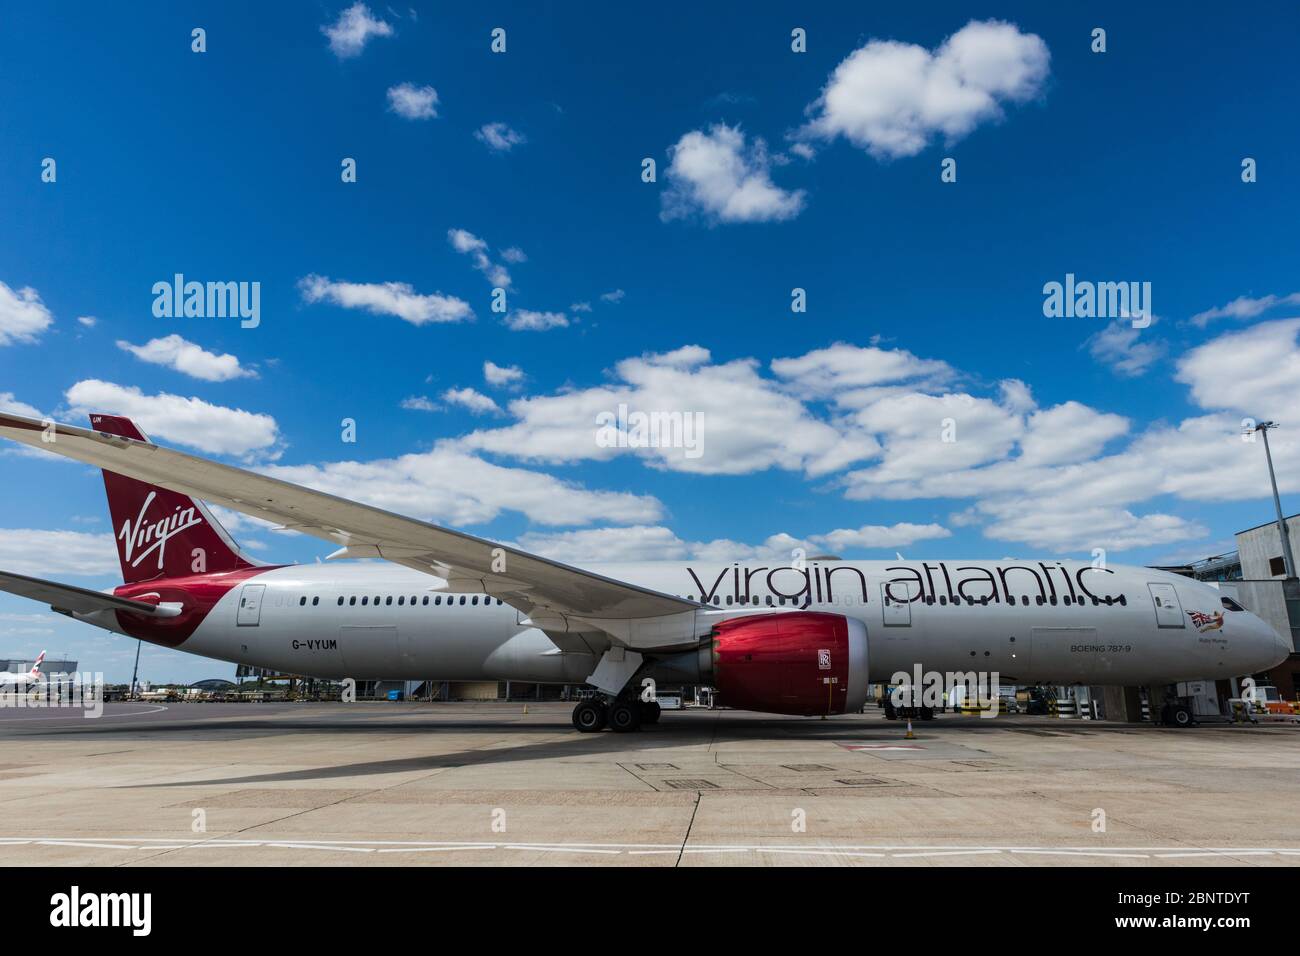 Avion Virgin Atlantic à l'aéroport de Londres Heathrow Banque D'Images